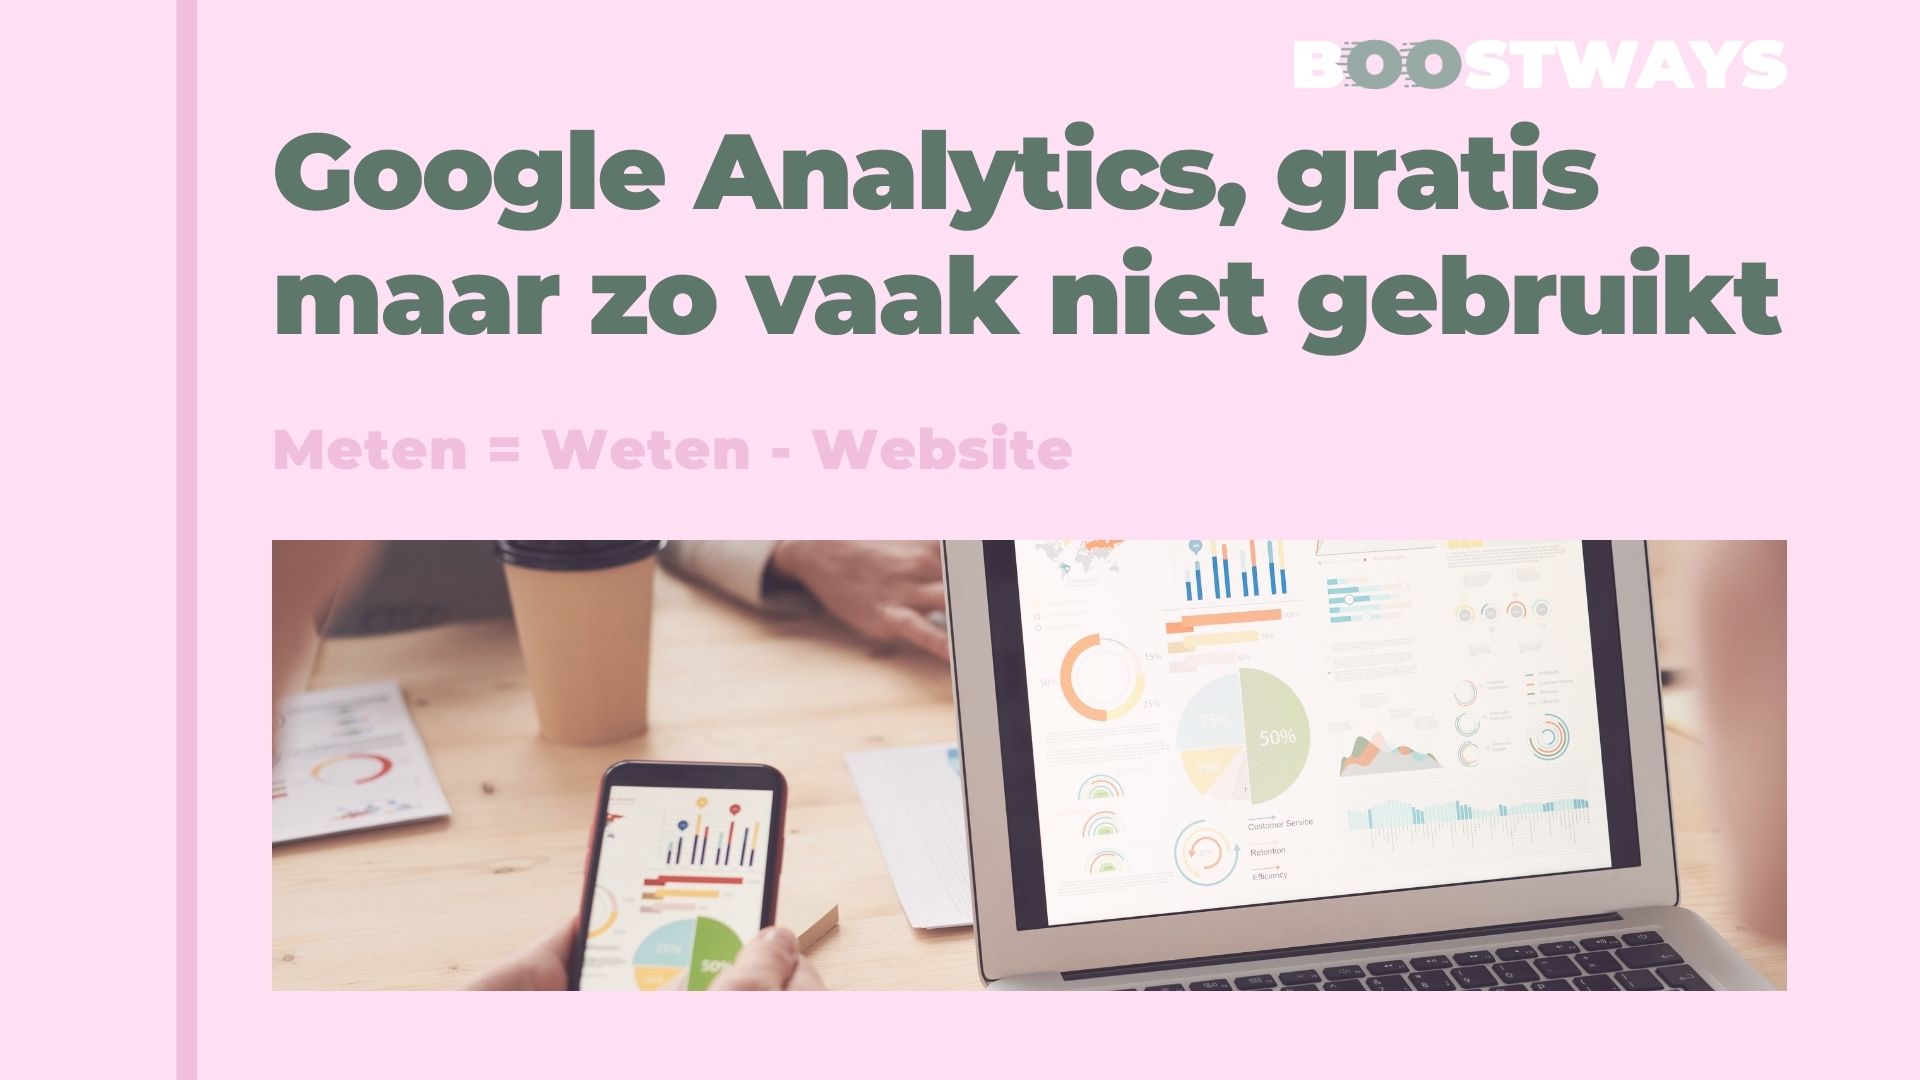 Google Analytics, gratis maar zo vaak niet gebruikt.